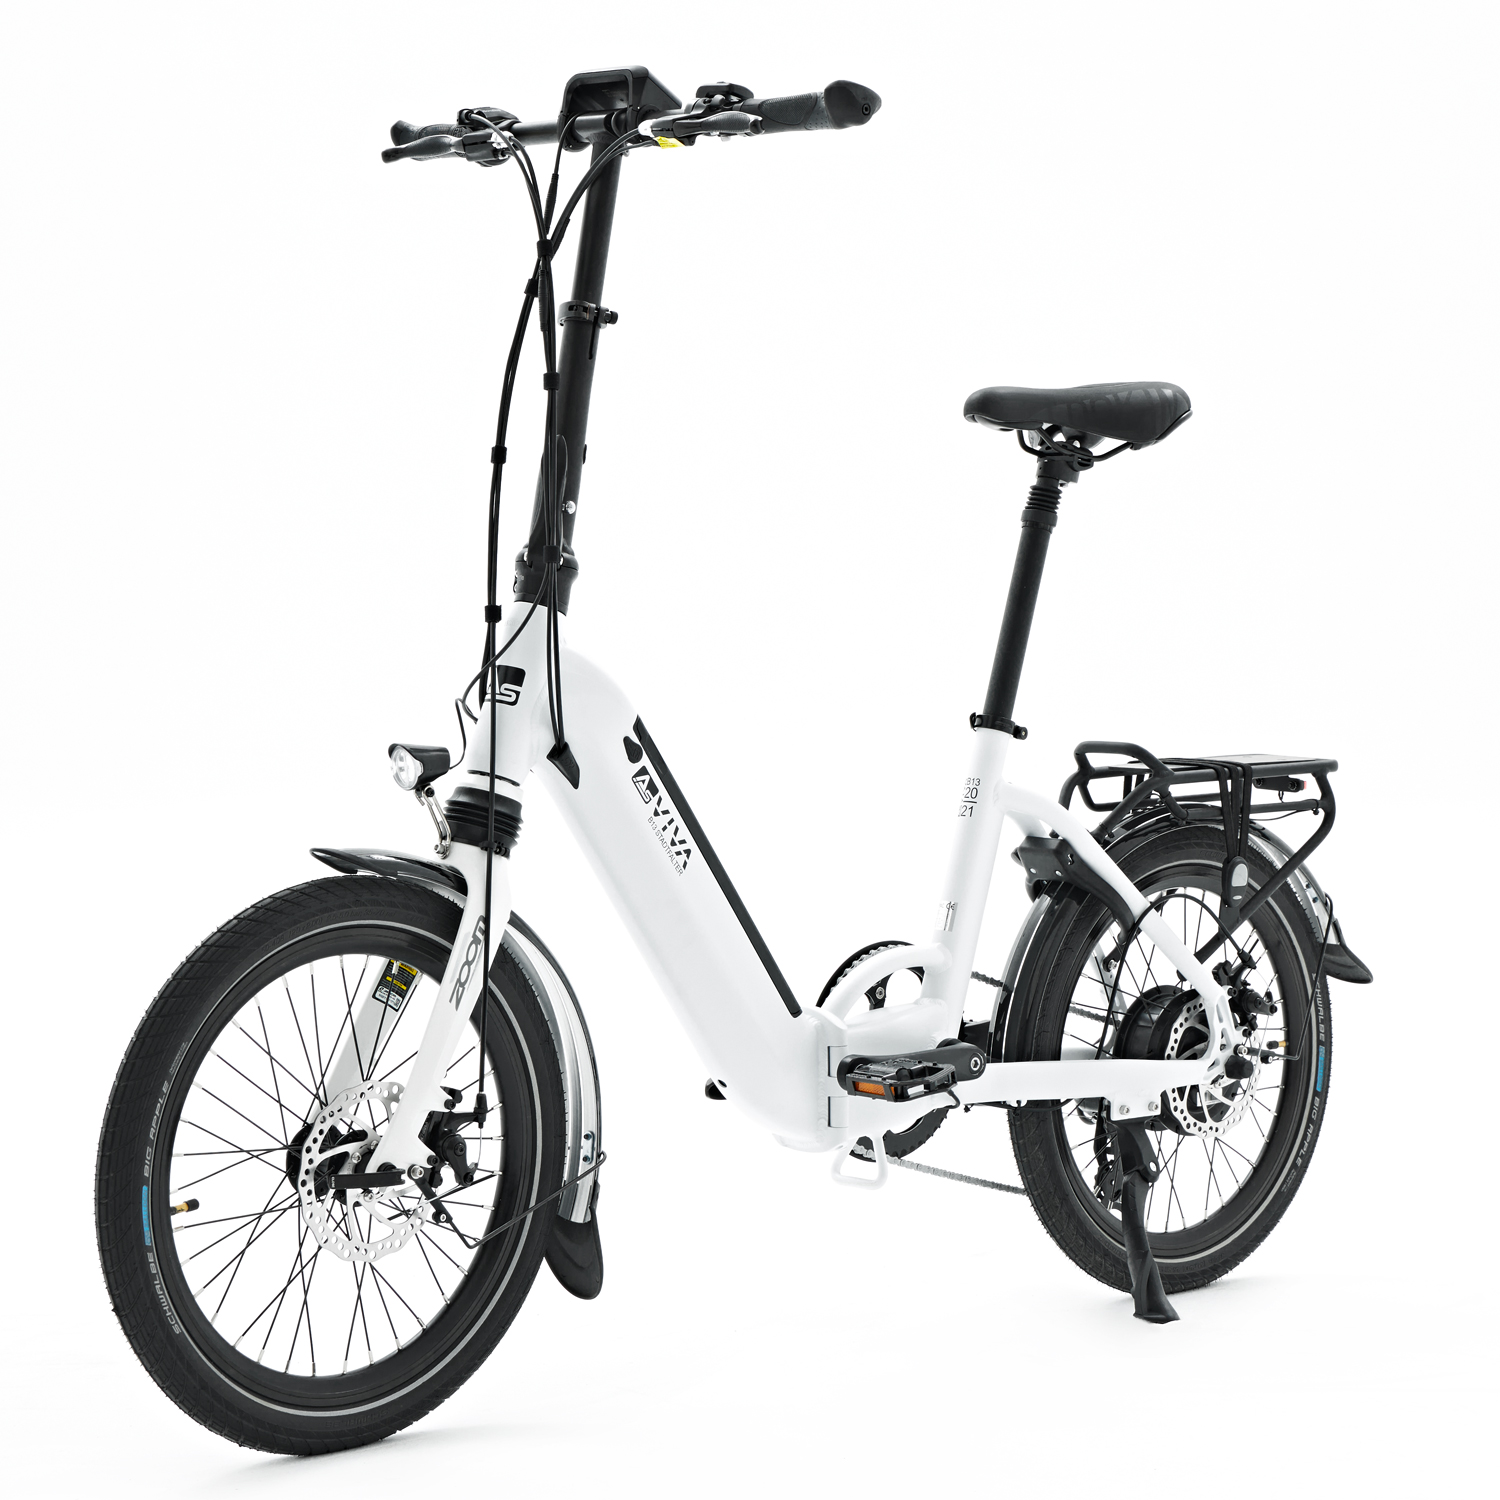 Rsiii: Fahrrad Elektrofahrrad E-Bike Klapp 250w Lithium Batterie